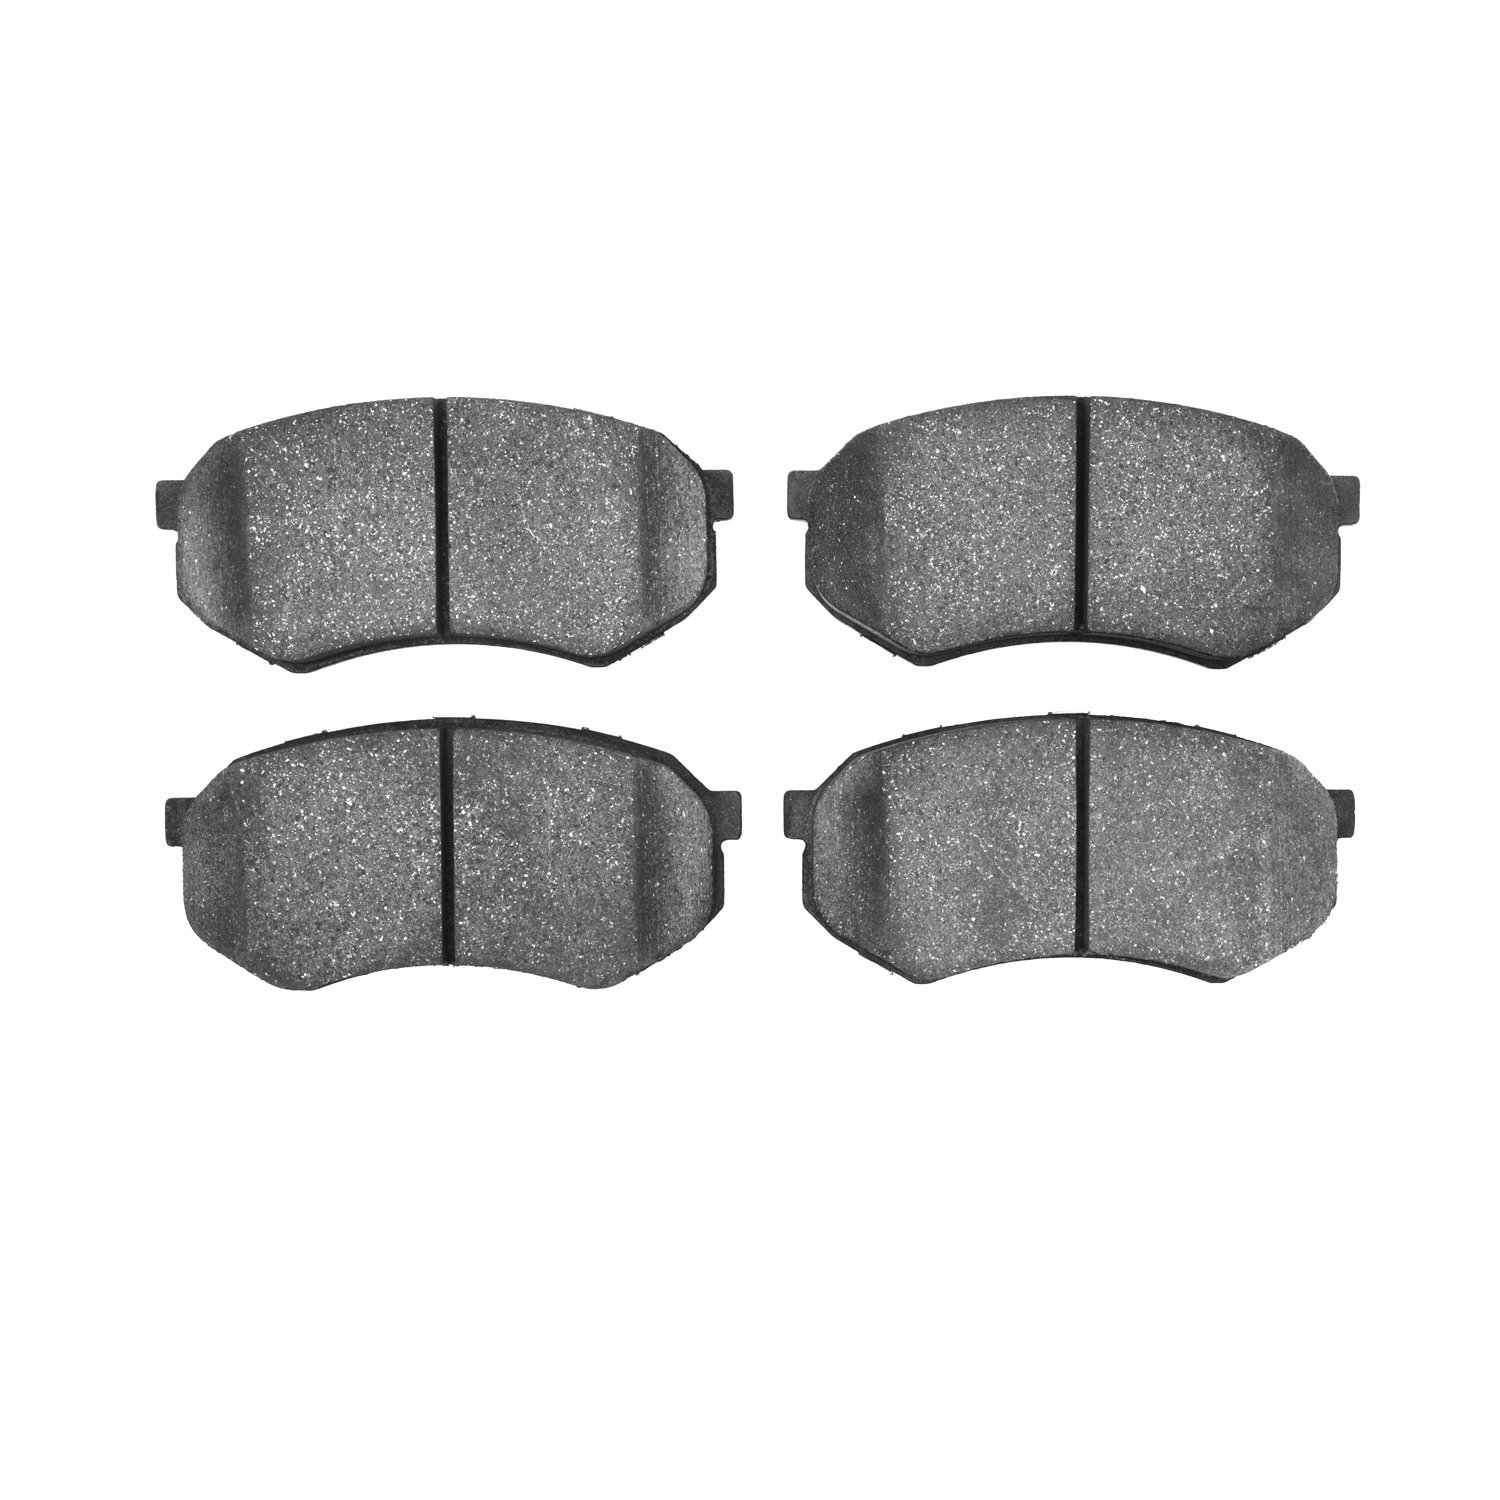 1310-0433-00 3000-Series Ceramic Brake Pads, 1989-2005 Multiple Makes/Models, Position: Front,Fr